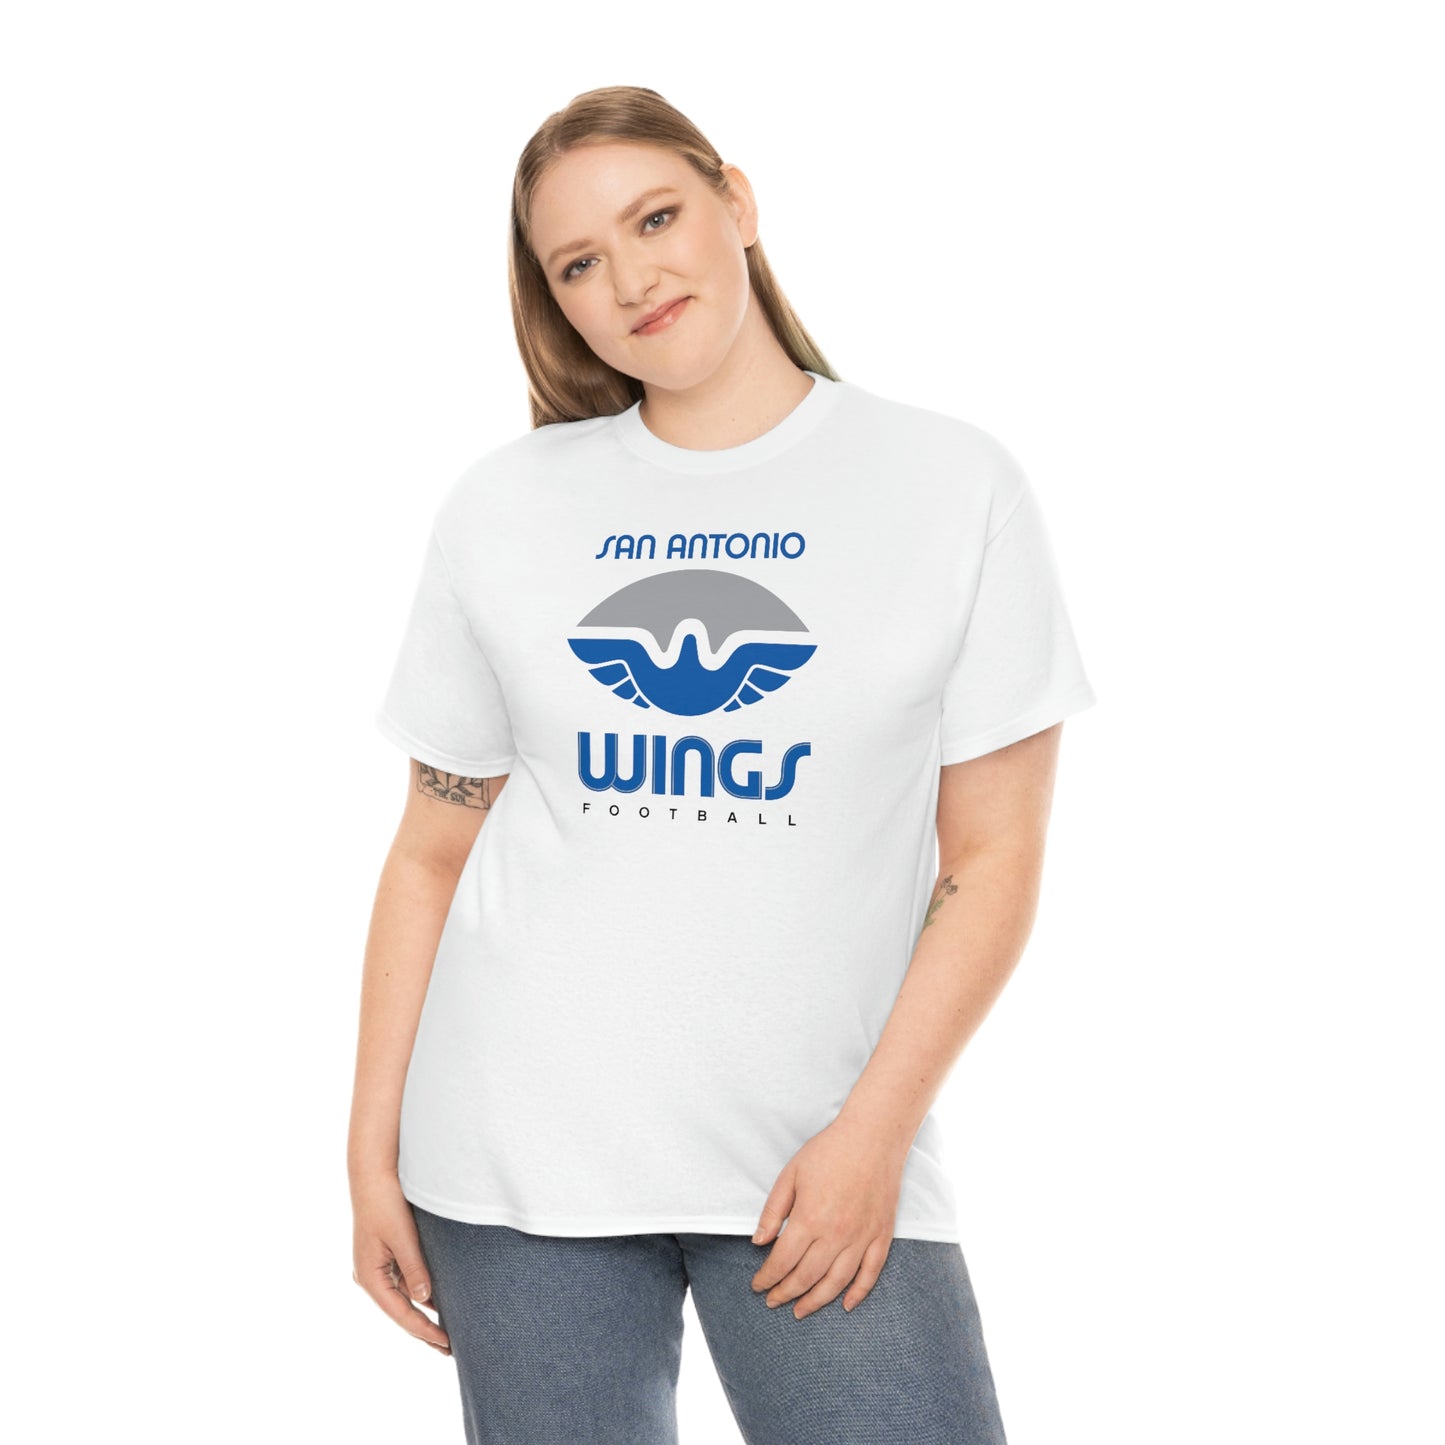 San Antonio Wings T-Shirt